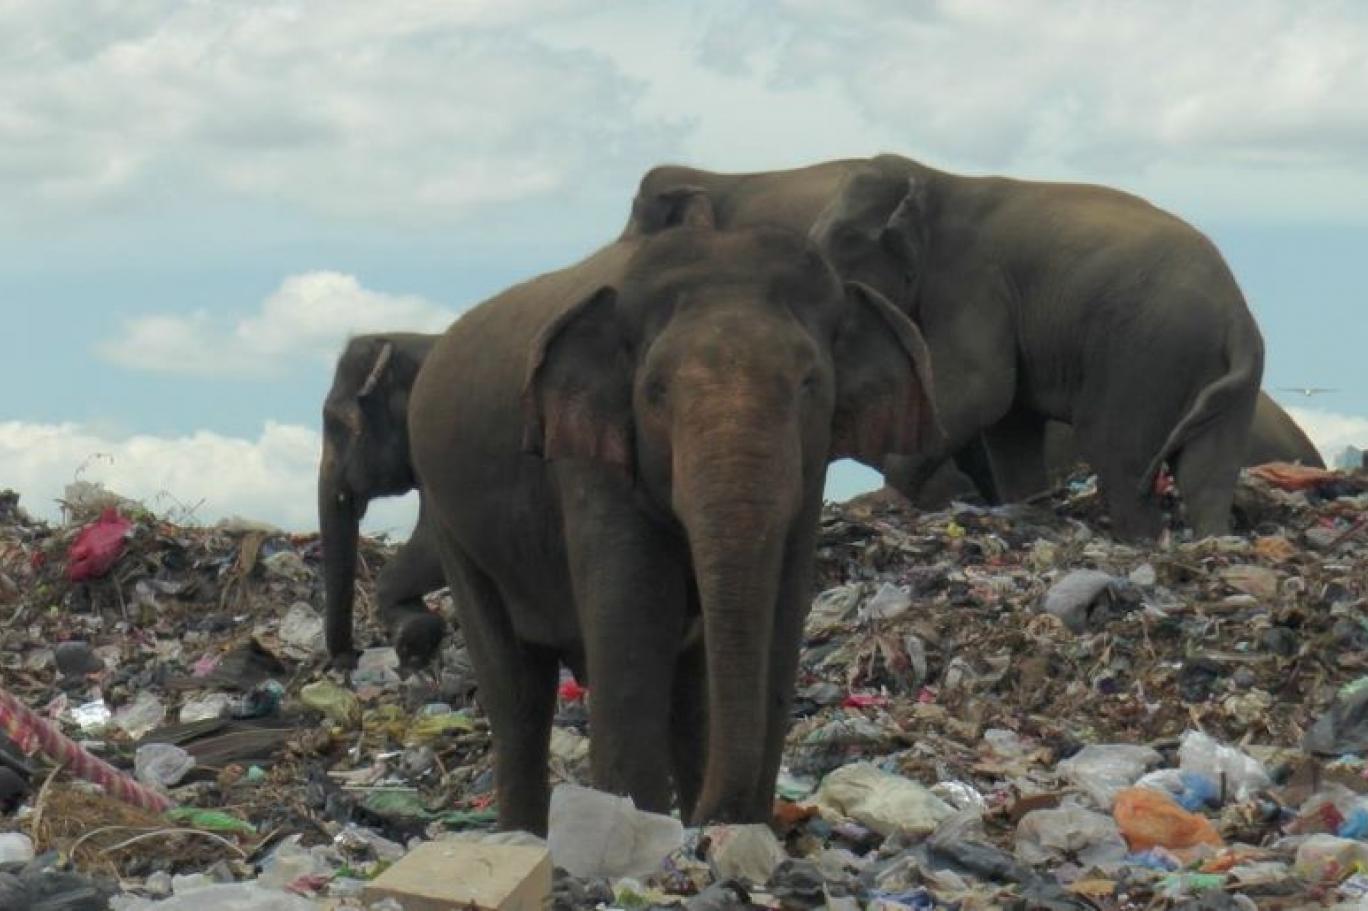 سريلانكا.. عوائق كهربائية لحماية الفيلة من البلاستيك